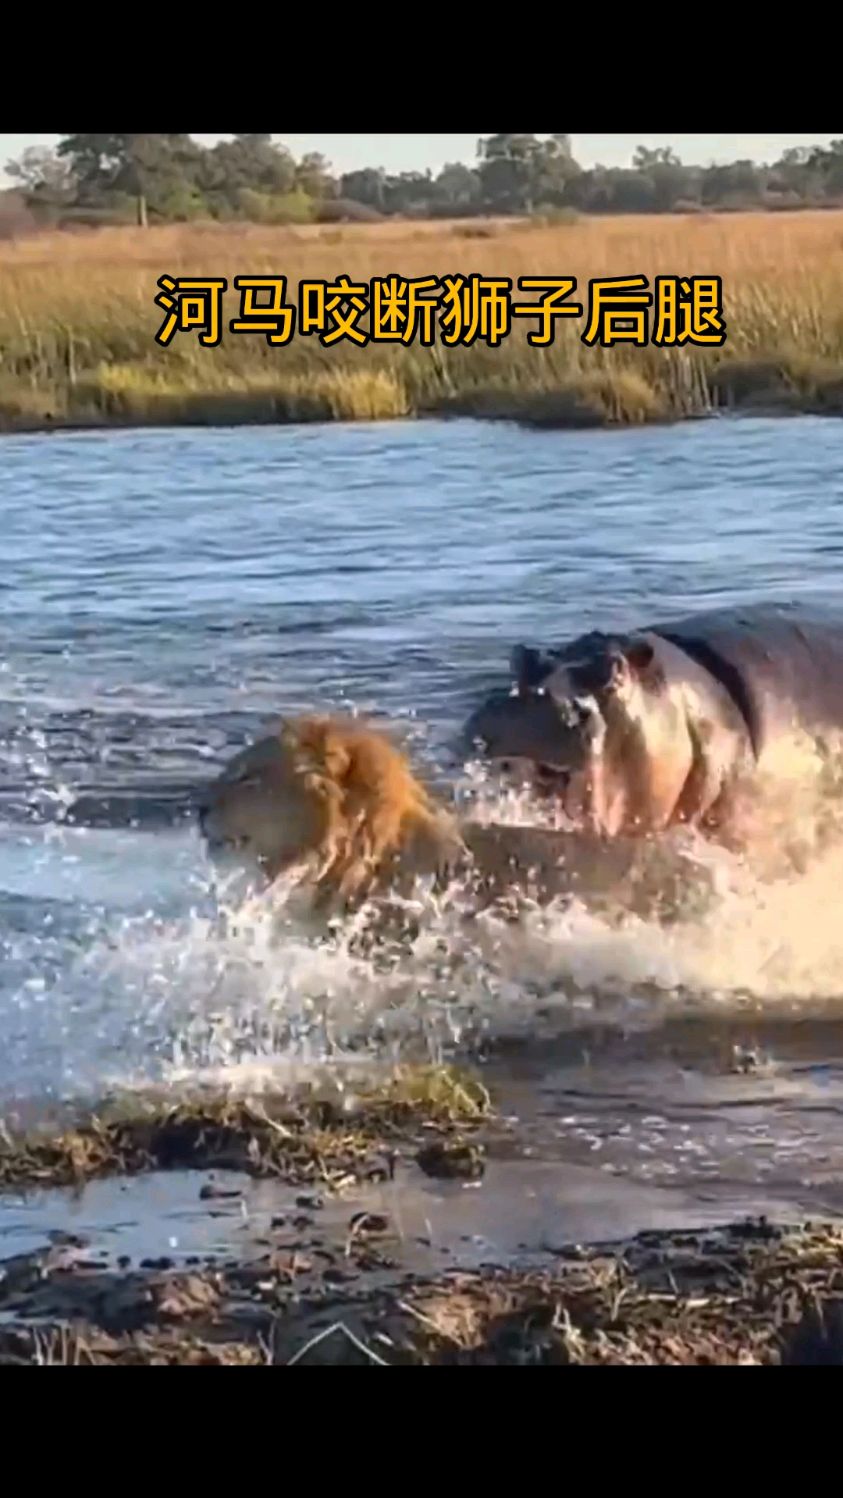 三头狮子组队过河,岂料遇到了河马偷袭,倒霉的雄狮被咬断了后腿